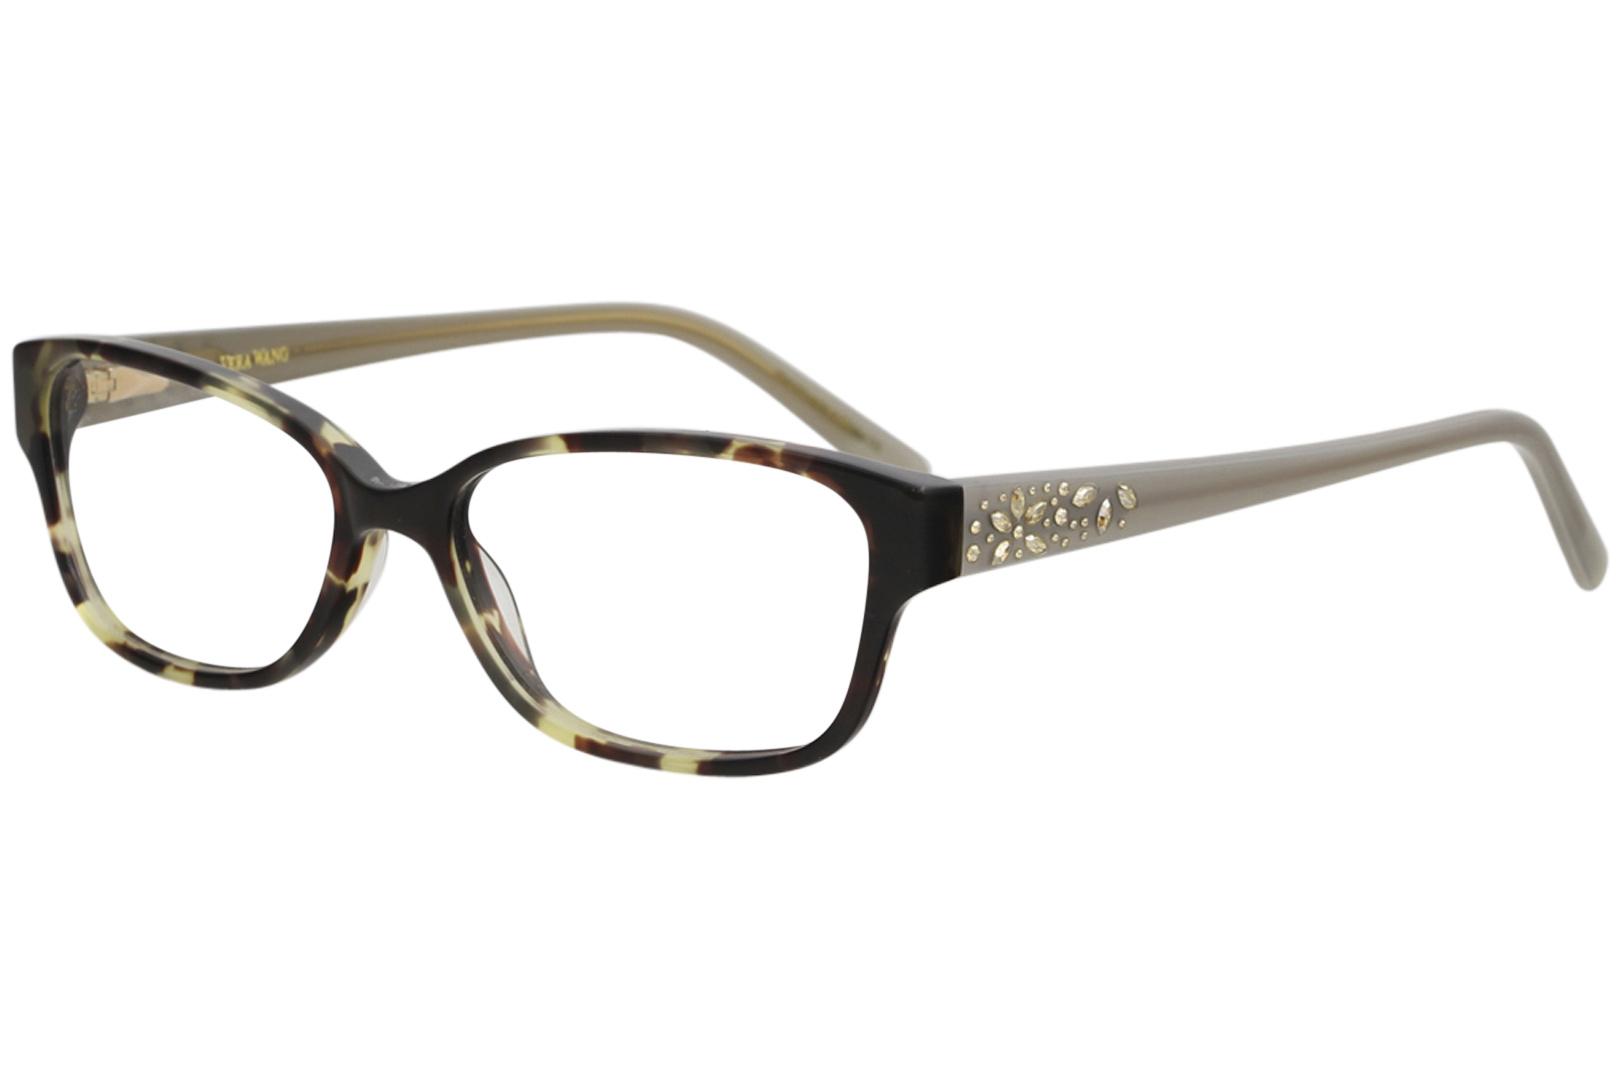 Vera Wang Women's Eyeglasses Magnifique Full Rim Optical Frame - Tortoise   TO - Lens 52 Bridge 15 Temple 135mm